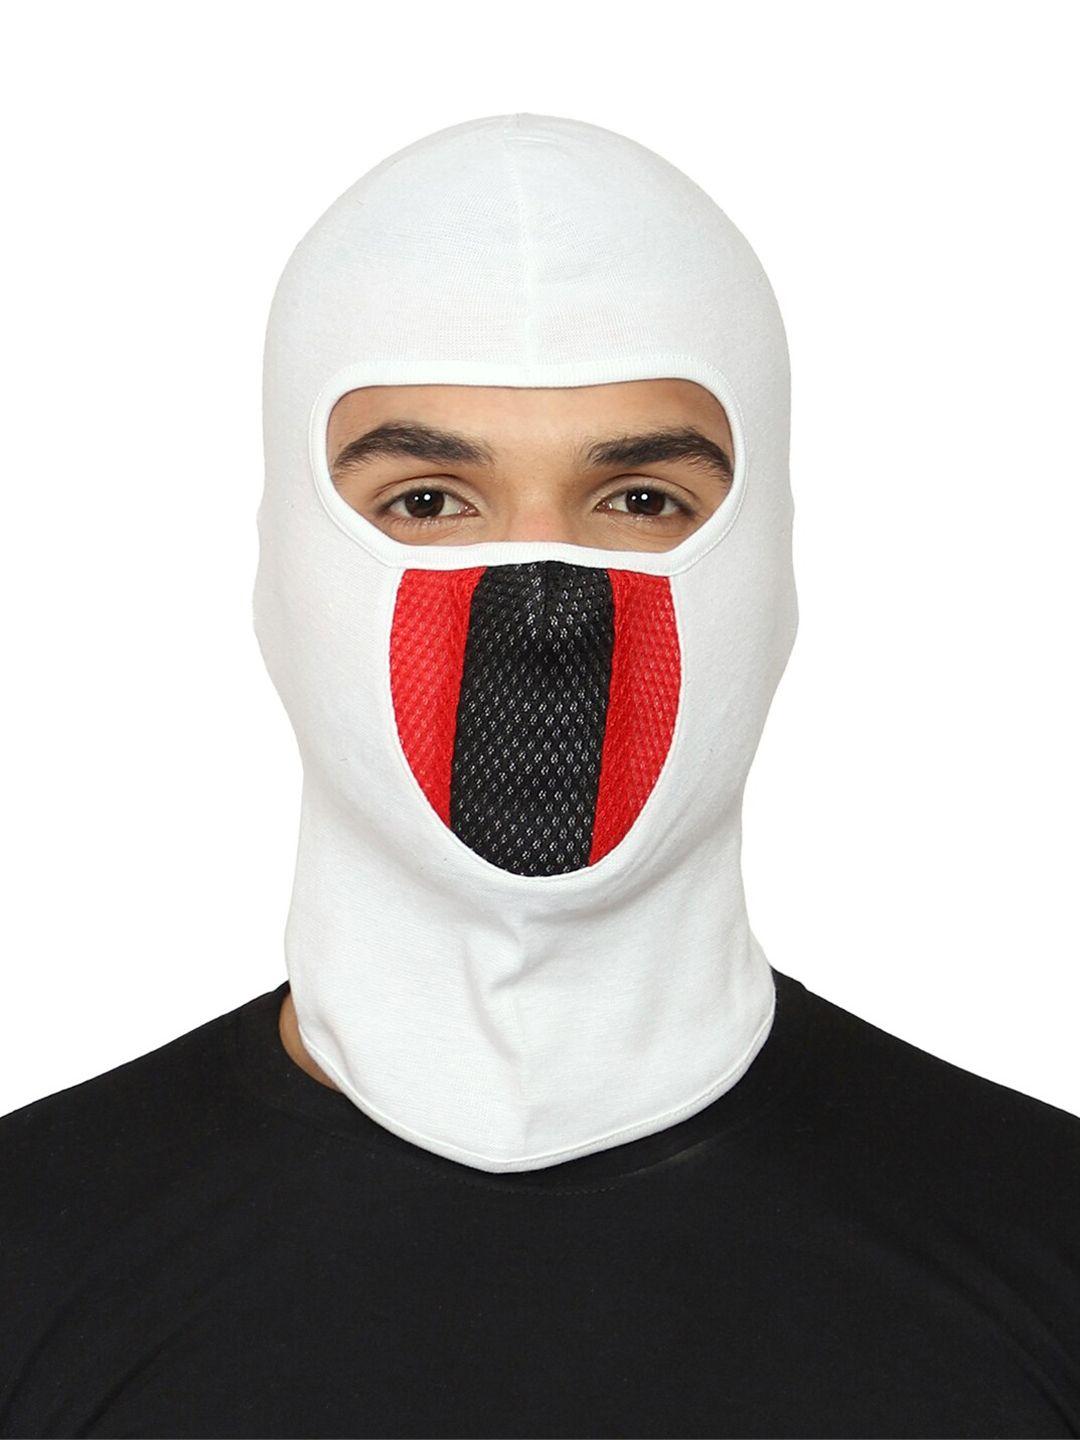 gajraj reusable balaclava face mask with air filter mesh